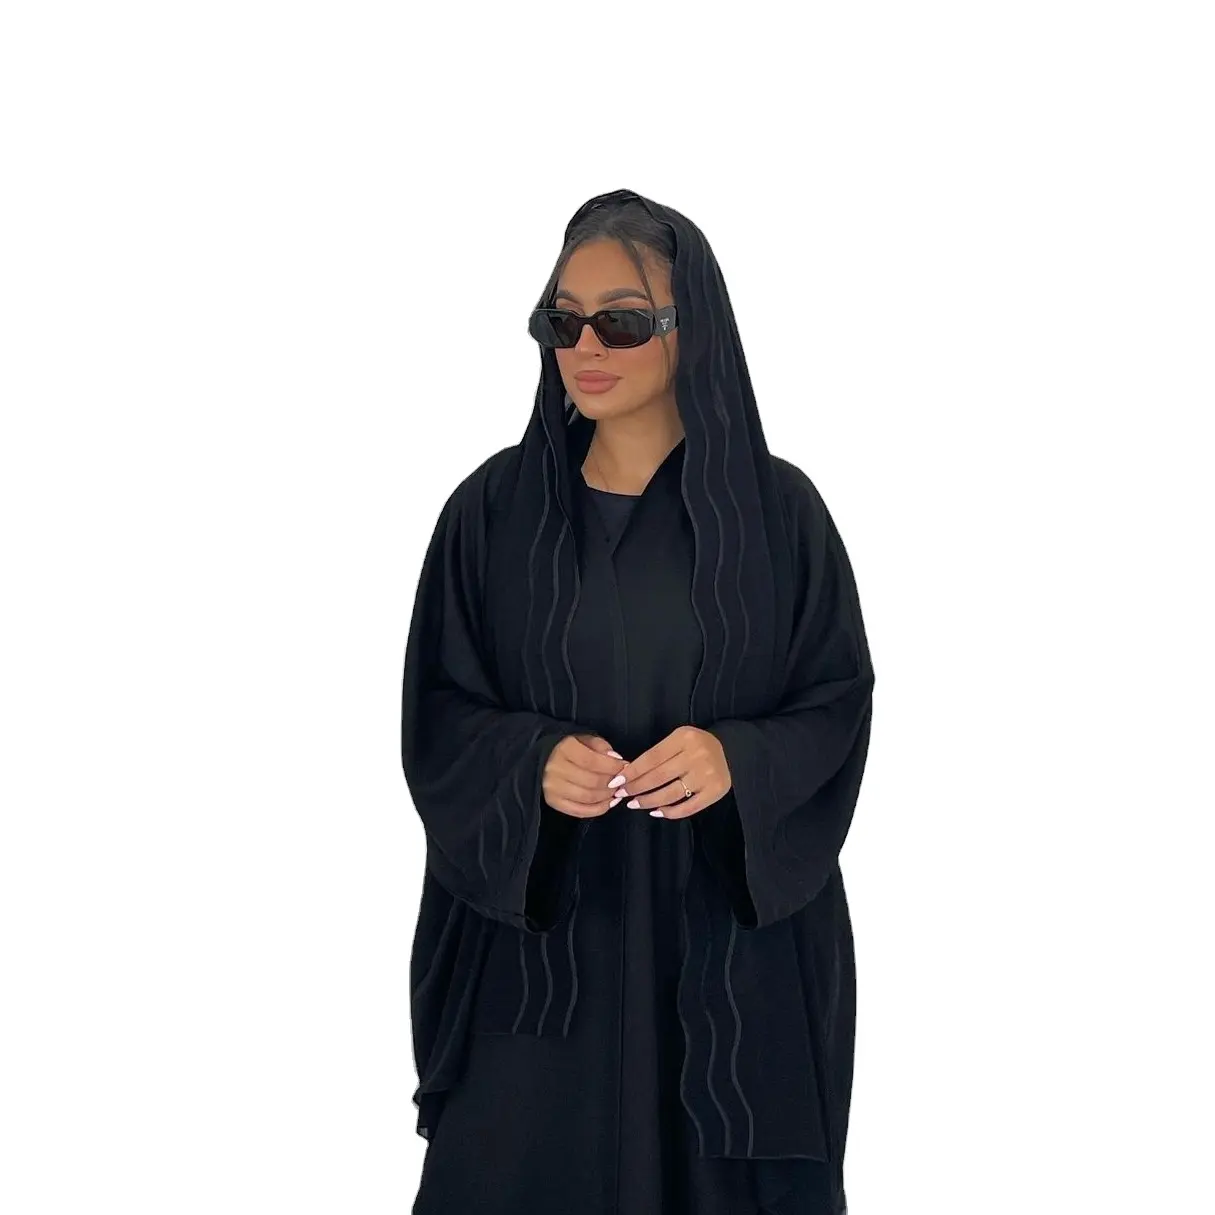 Bicomfort Dubai türkiye ilham zarif işlemeli Abaya rahat zarif etnik tarzı artı boyutu kumaş giyim ile başörtüsü